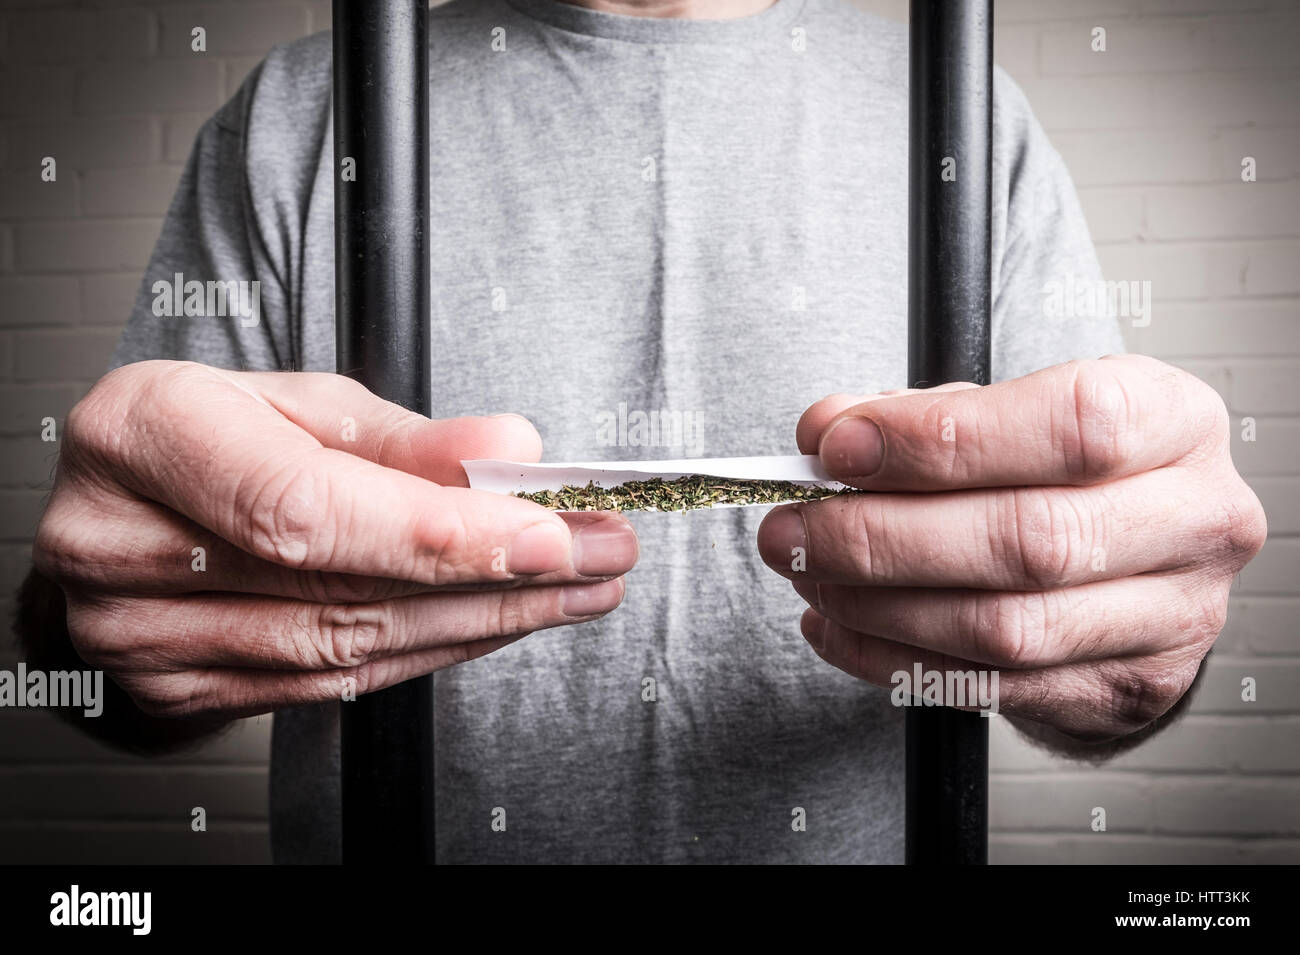 Un prisionero detrás de las rejas en la cárcel posesión de drogas o máximos legales Spice (foto planteados por modelo para ilustrar el problema de la droga en las cárceles británicas) Foto de stock